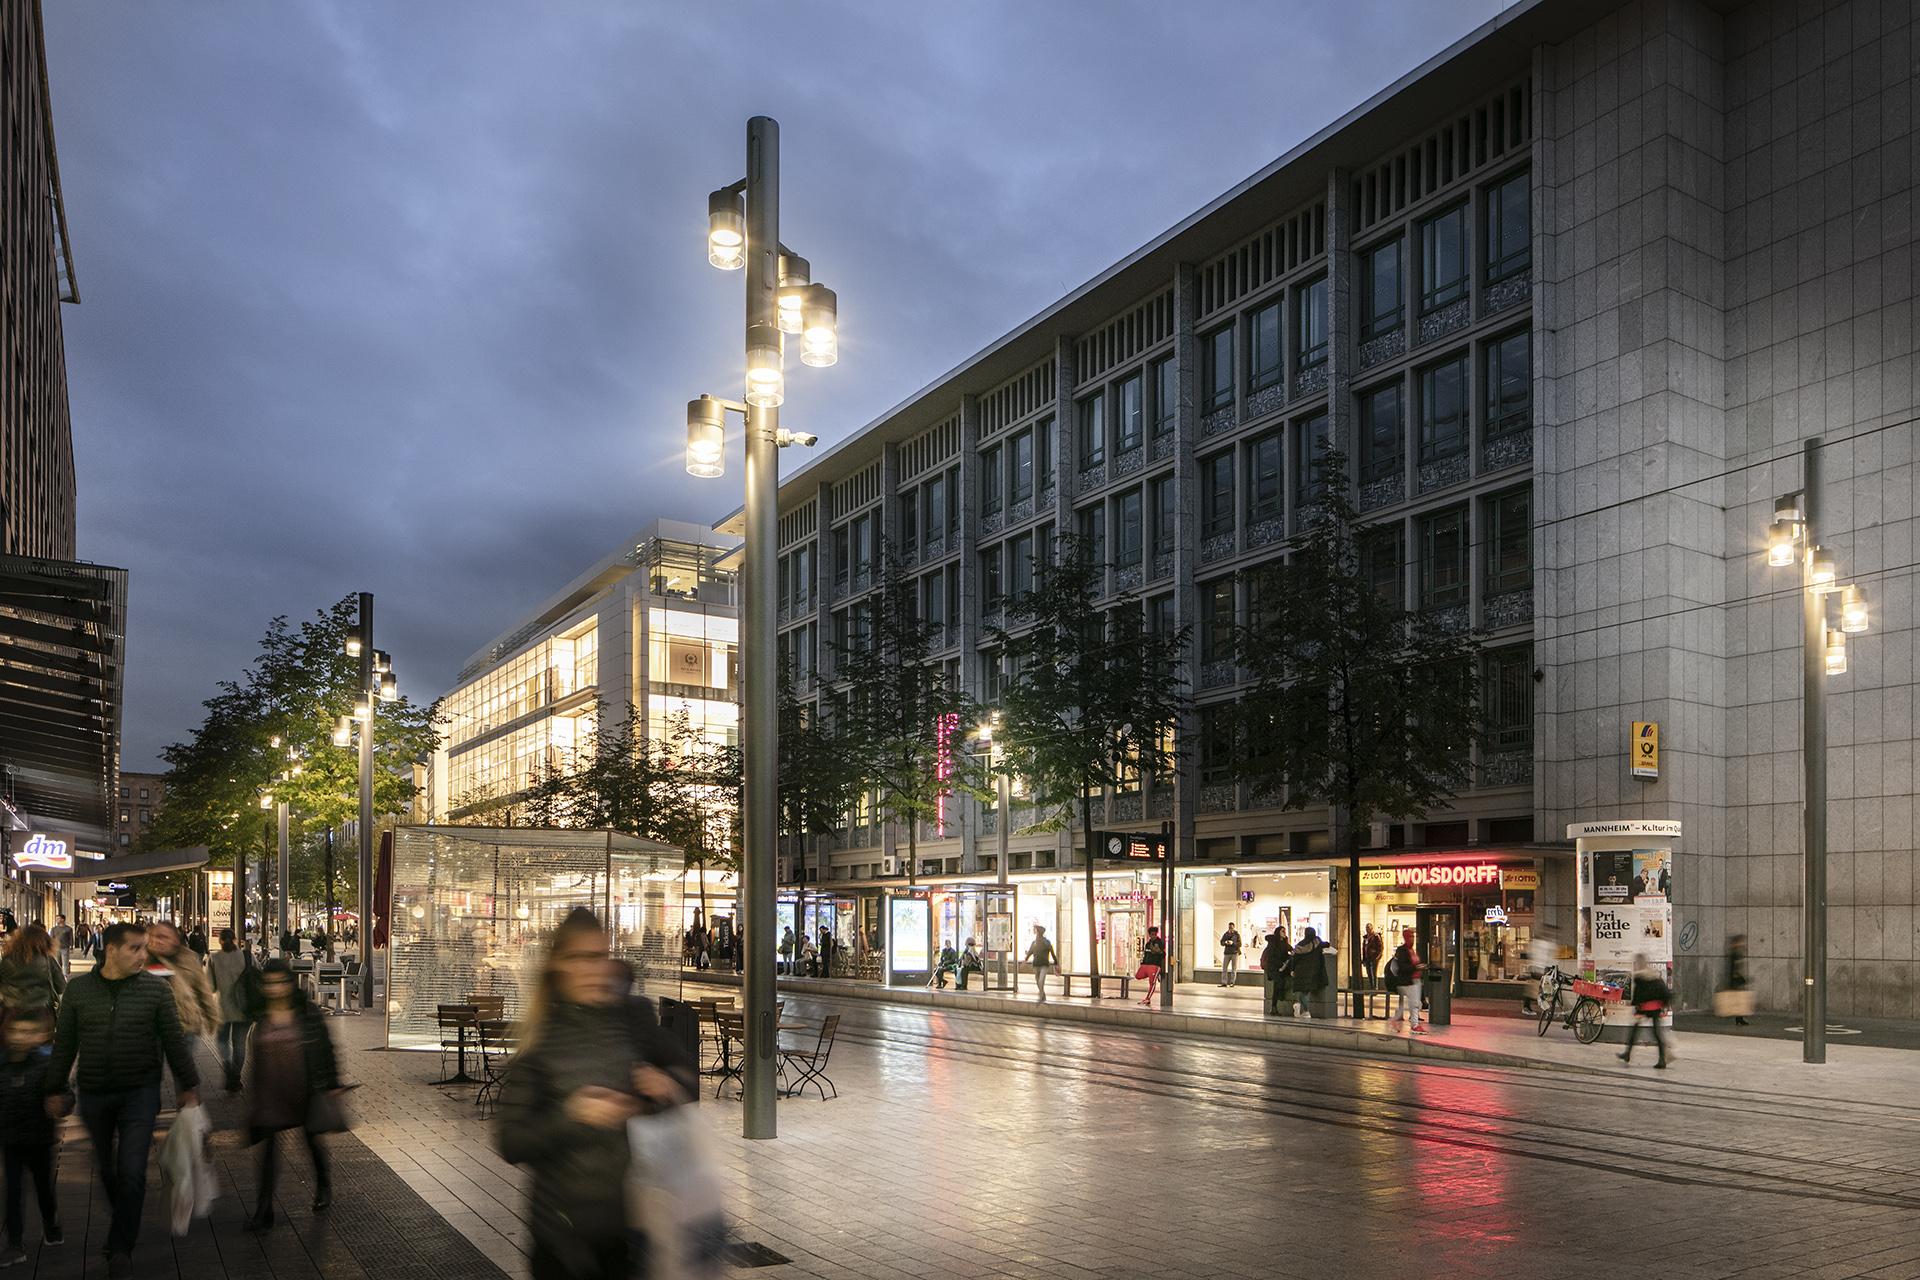 Schréder entwarf eine maßgeschneiderte Leuchte für die Beleuchtung des berühmten Einkaufszentrums Planken, die den Charakter der Stadt widerspiegelt